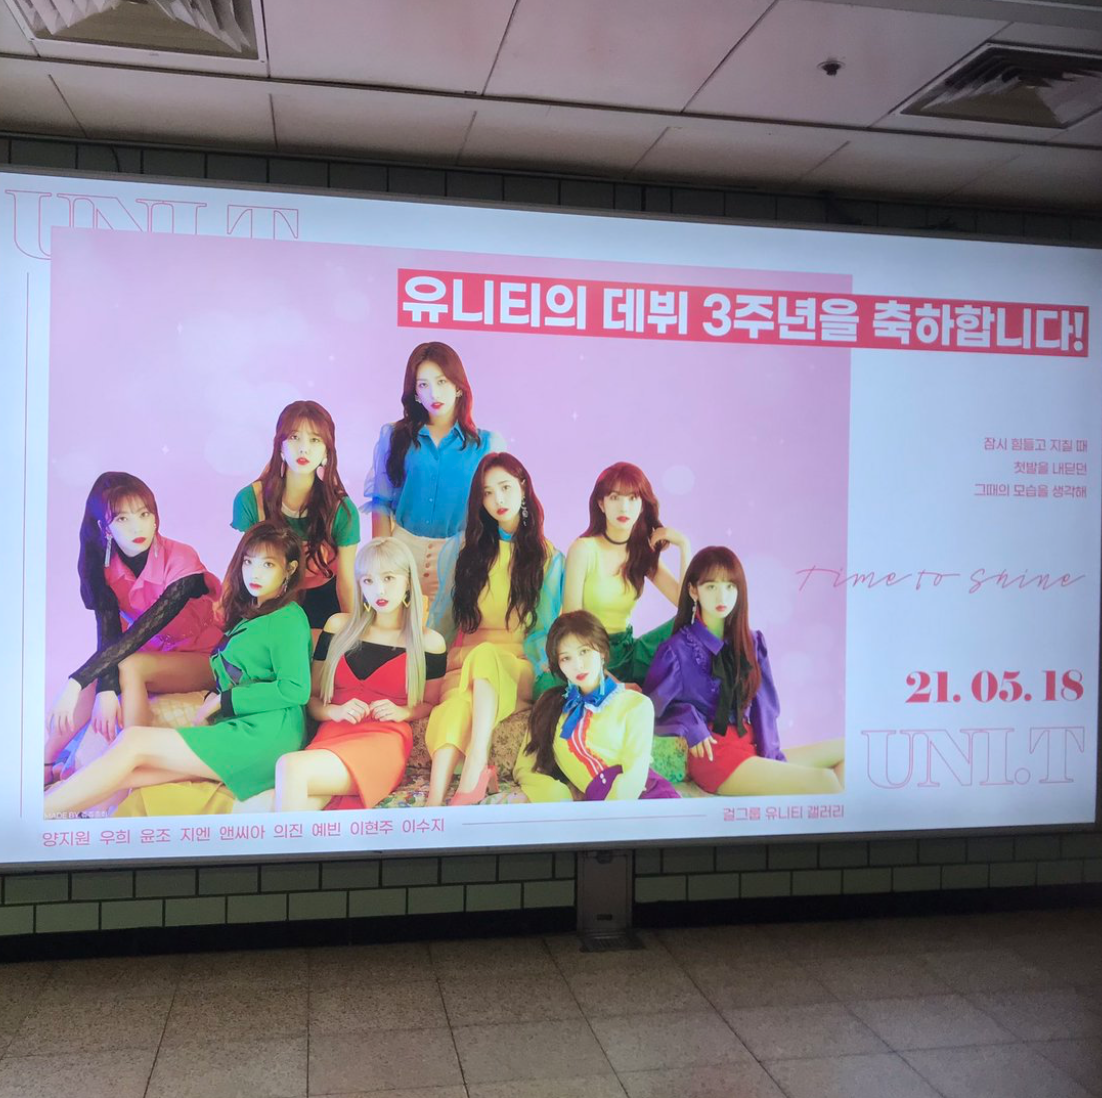 유니티 팬클럽 지하철 광고진행